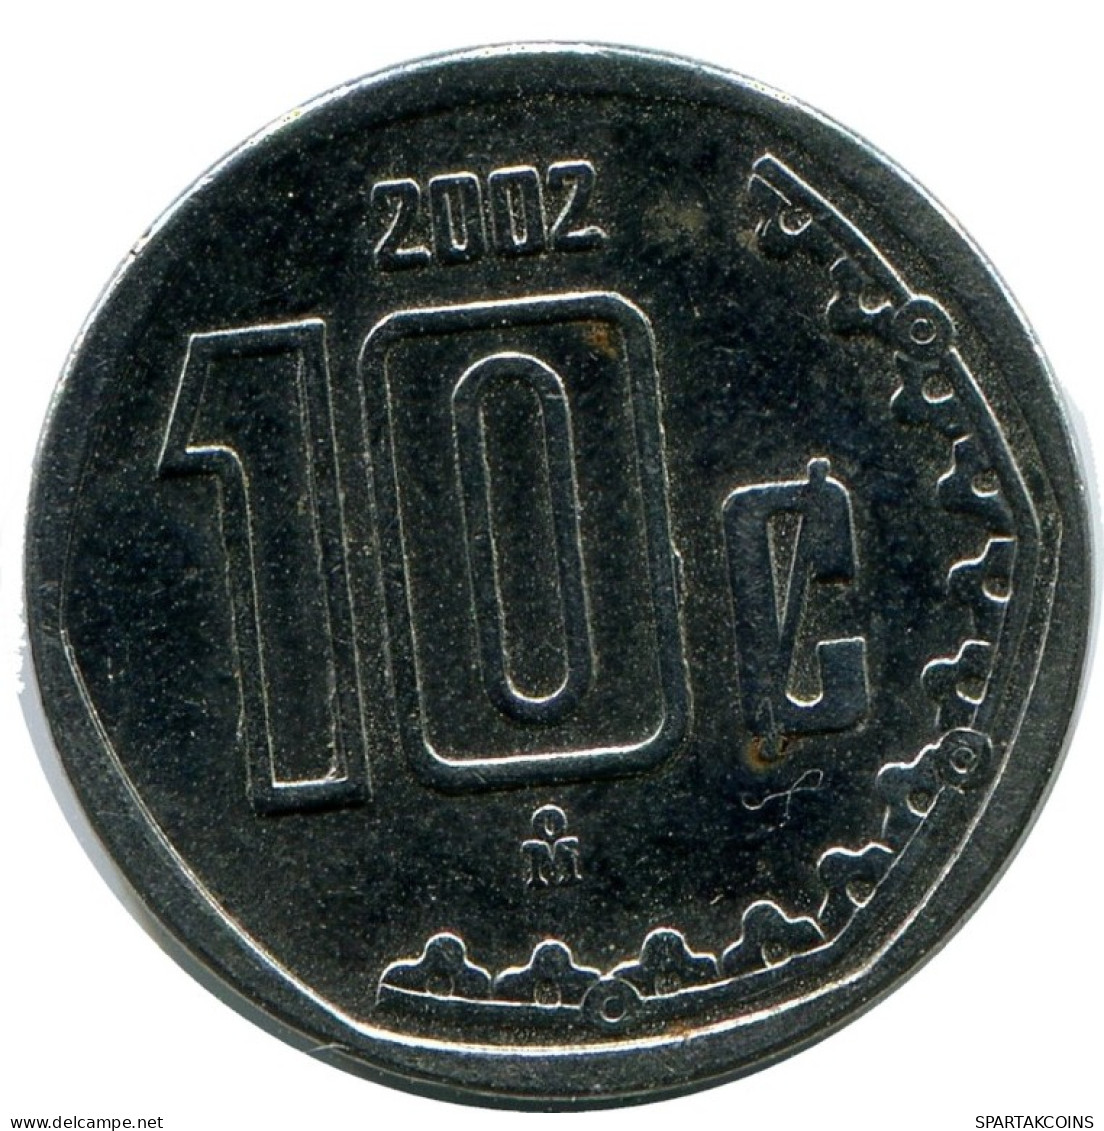 10 CENTAVOS 2002 MEXICO Coin #AH414.5.U.A - Mexico